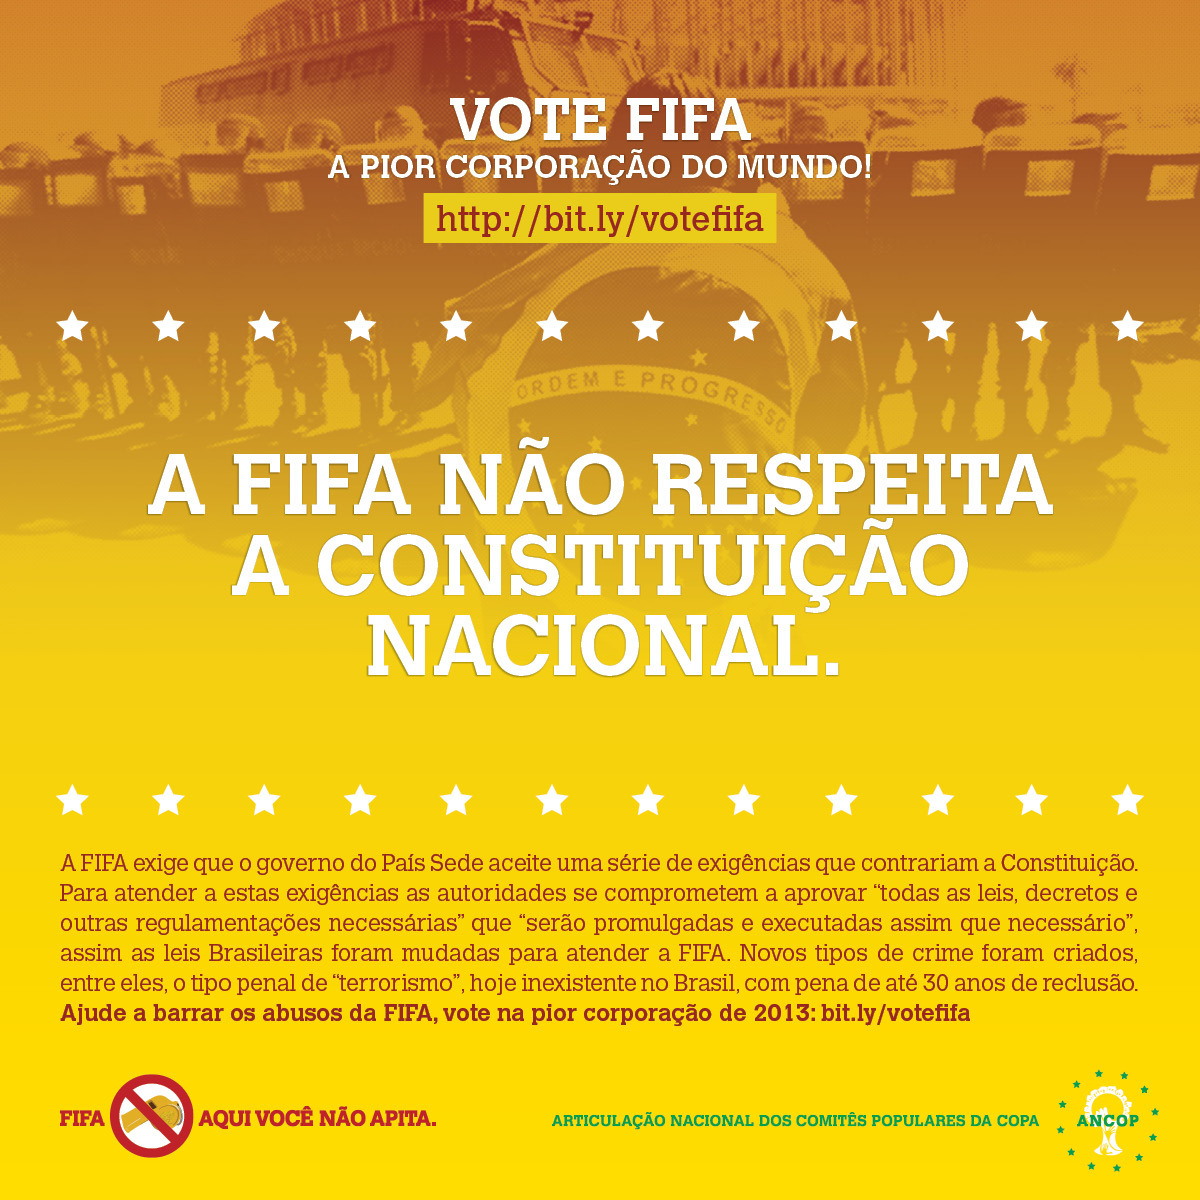 A FIFA manda até nas nossas leis! Assim não dá&#8230; VOTE: http://bit.ly/votefifa